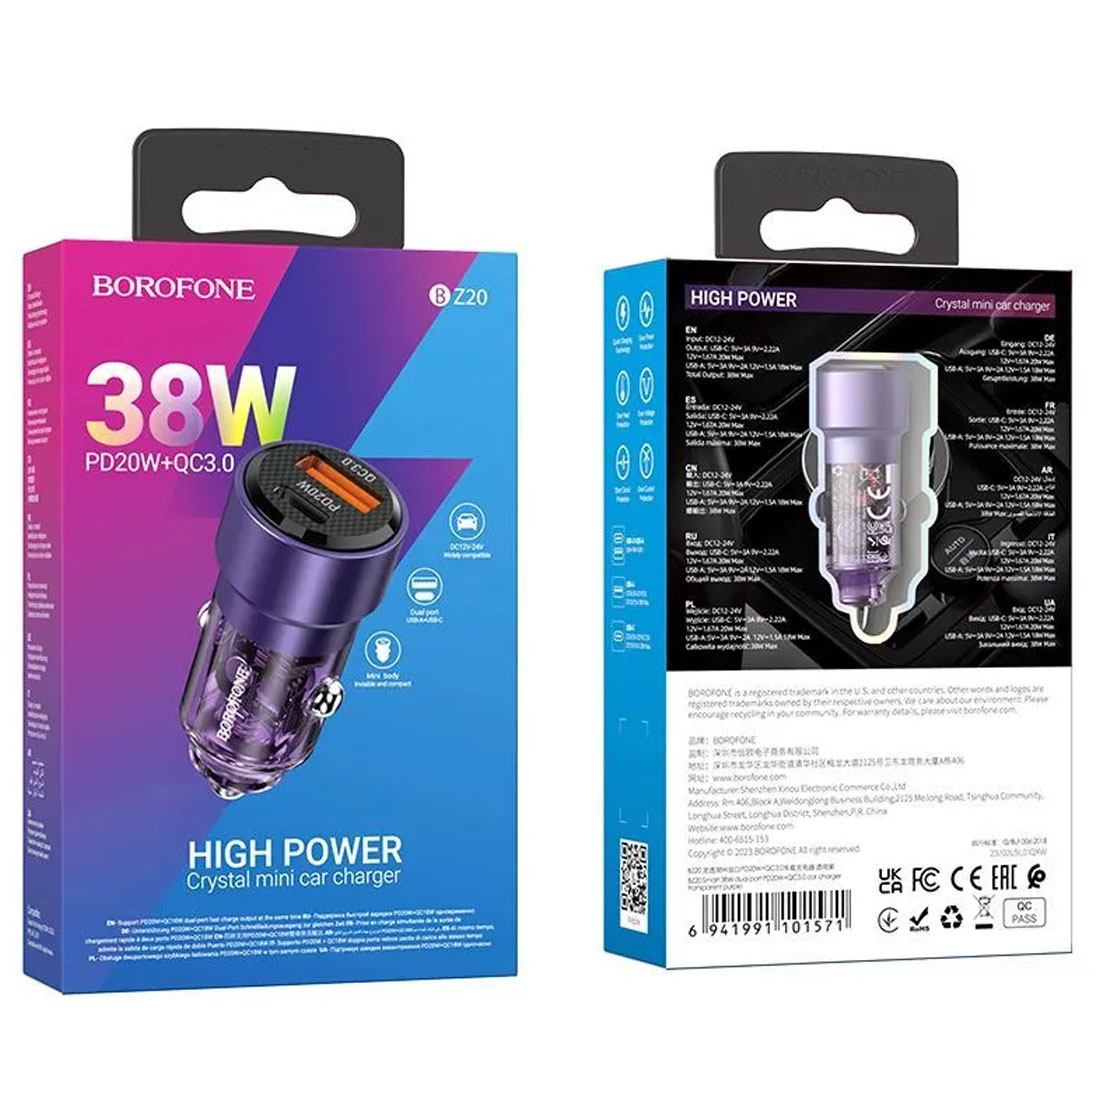 АЗУ (Автомобильное зарядное устройство) BOROFONE BZ20 Smart, 38W, 1 USB, 1 USB Type C, PD20W, QC3.0, цвет прозрачно фиолетовый